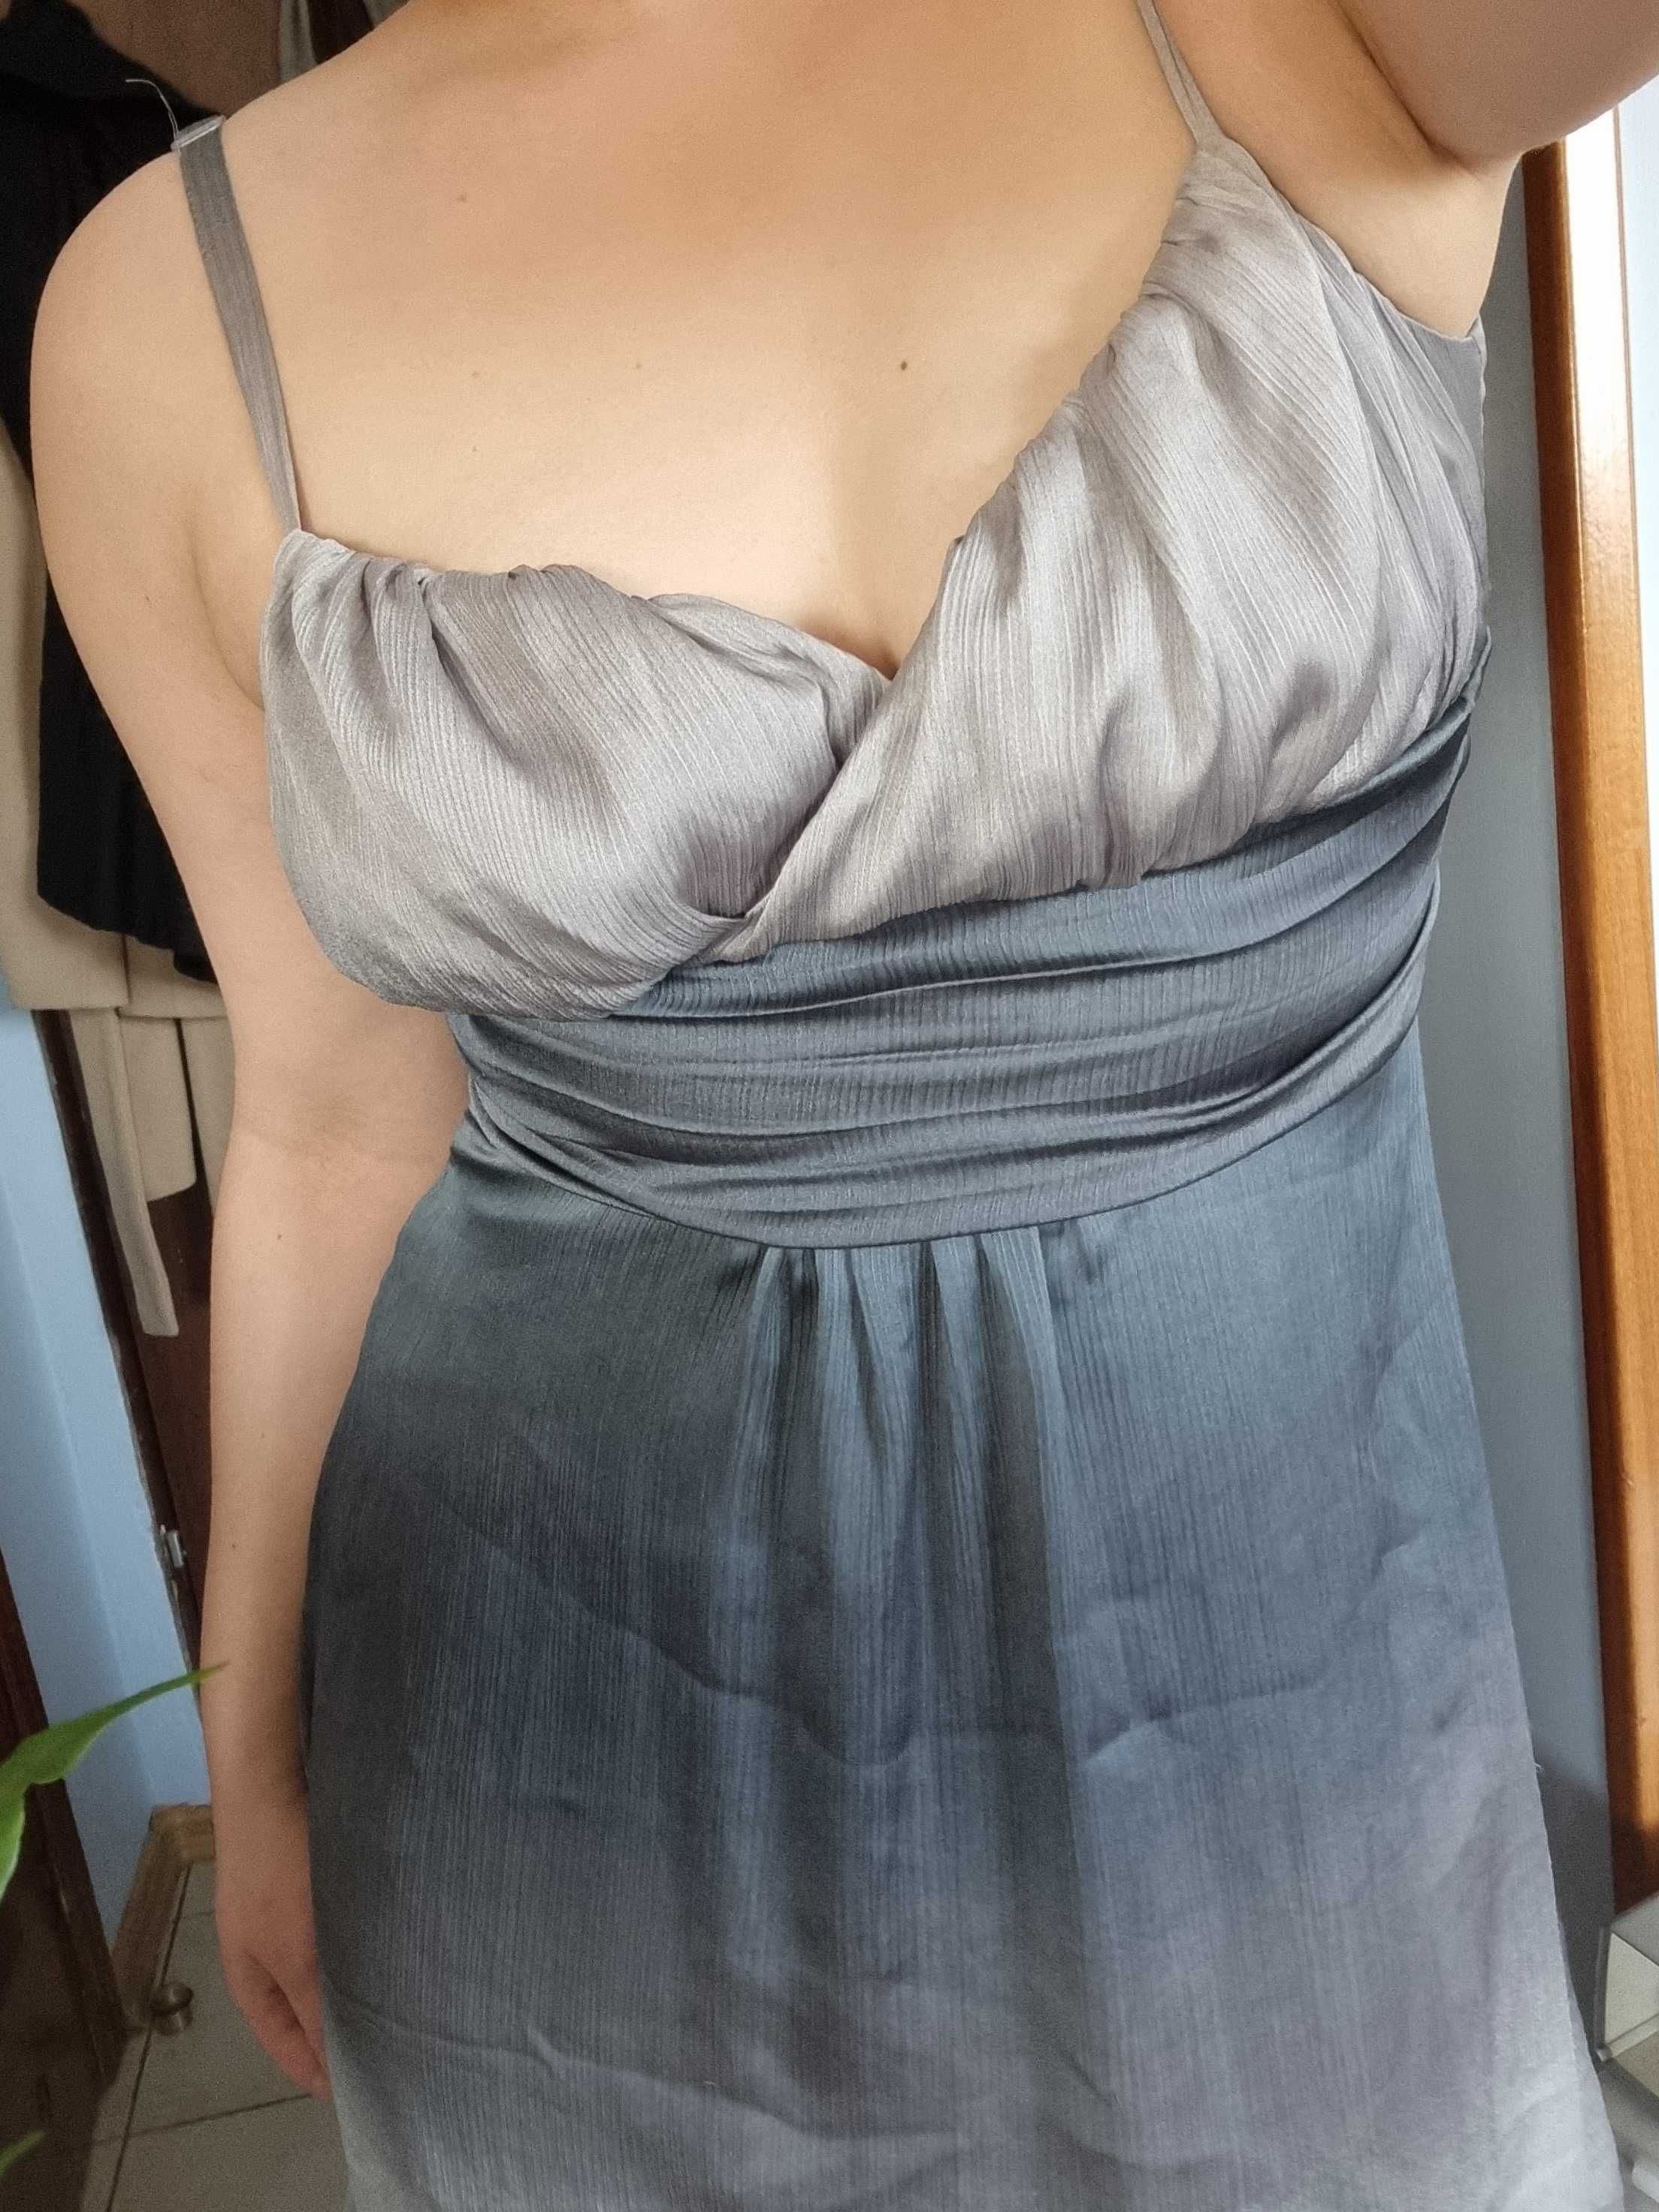 Szara sukienka Orsay, rozmiar M, cena 25 zł